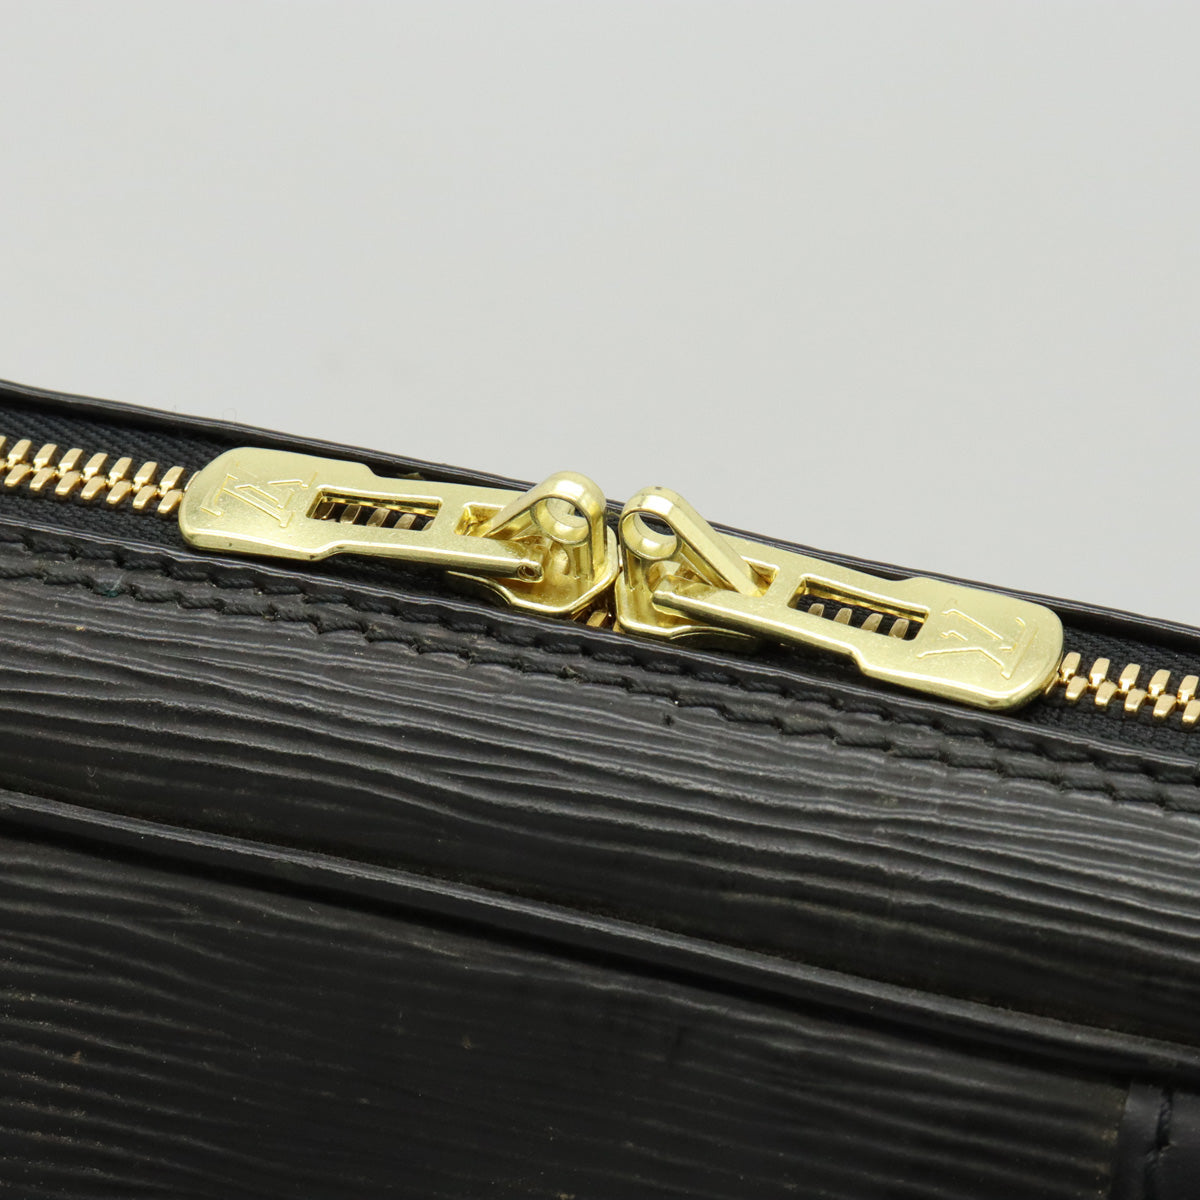 Louis Vuitton Epi Porte Document Voyage Business Bag M59092